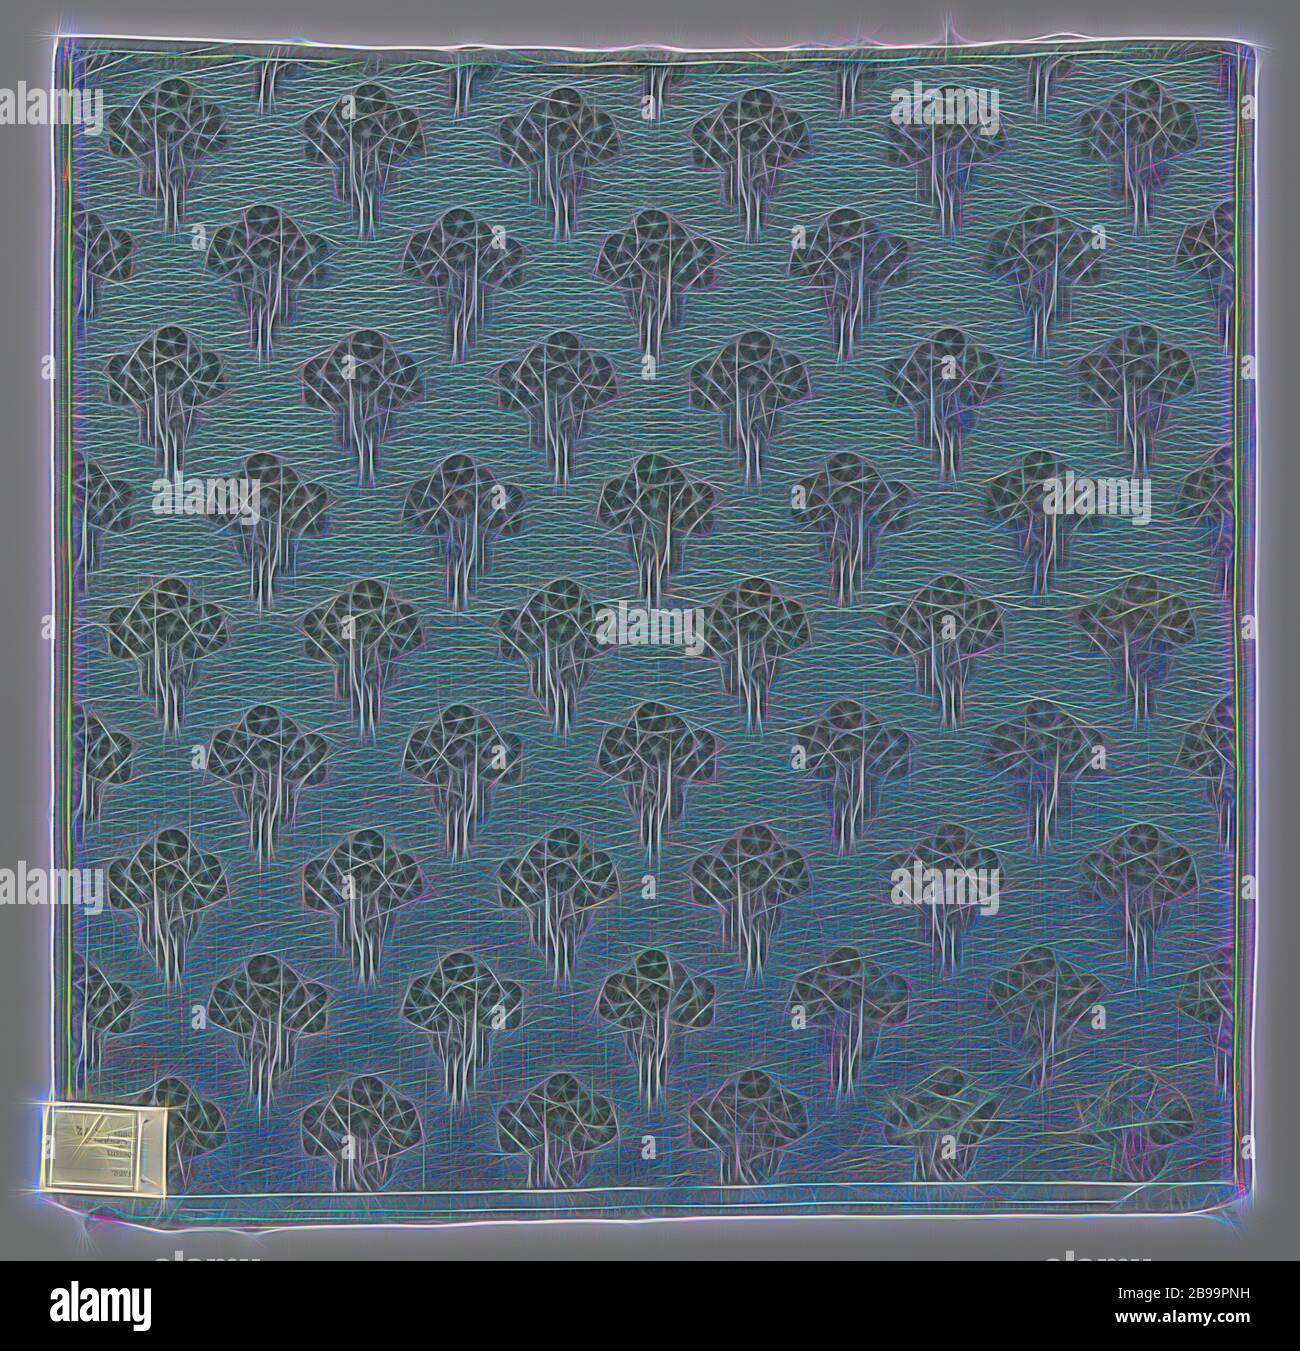 Velluto annidato e tagliato con ciuffi di fiori stilizzati, in azzurro, tappezzeria o tessuto elasticizzato di velluto tagliato e noppato con ciuffi di fiori stilizzati, in azzurro-verde chiaro., Firma H.P. Mutters, l'Aia, c. 1920 - c. 1930, seta, velluto (tessitura di tessuto), h 63.0 cm × w 61.0 cm, Reimagined by Gibon, disegno di calda allegra luce e luminosità raggi. Arte classica reinventata con un tocco moderno. La fotografia ispirata al futurismo, abbracciando l'energia dinamica della tecnologia moderna, del movimento, della velocità e rivoluzionando la cultura. Foto Stock